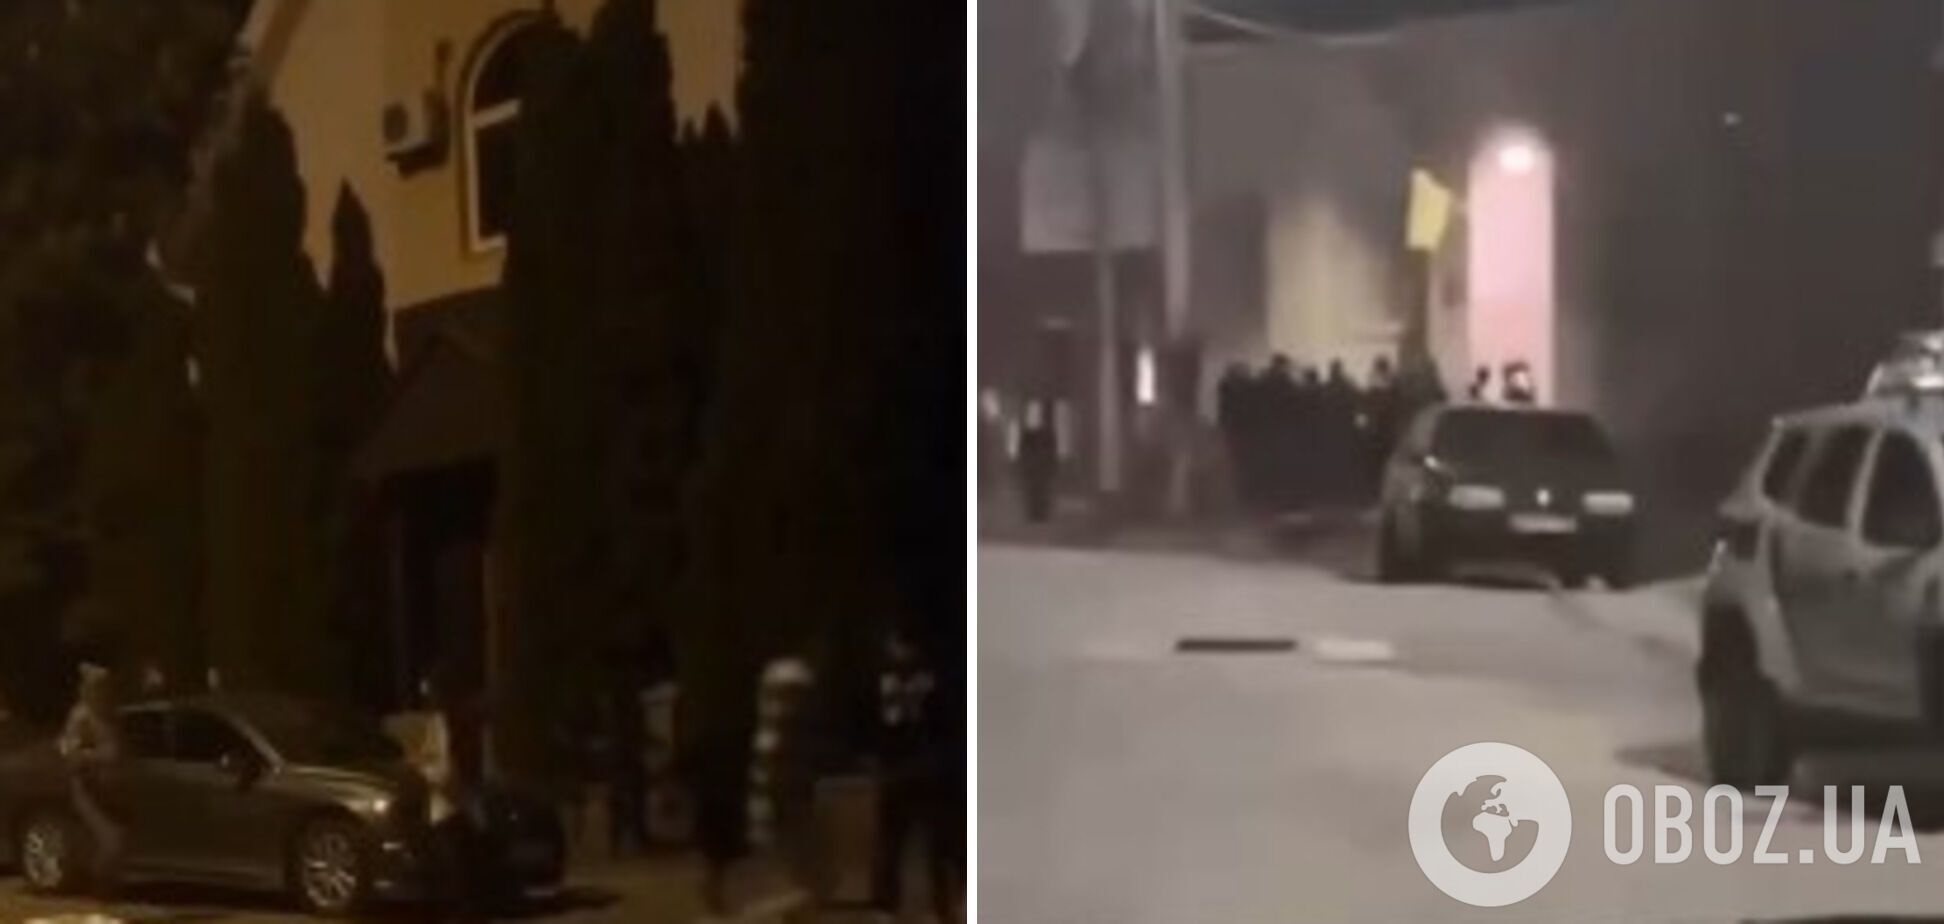 В Закарпатье толпа пыталась штурмом взять ТЦК, полиция открыла производство. Видео с места событий